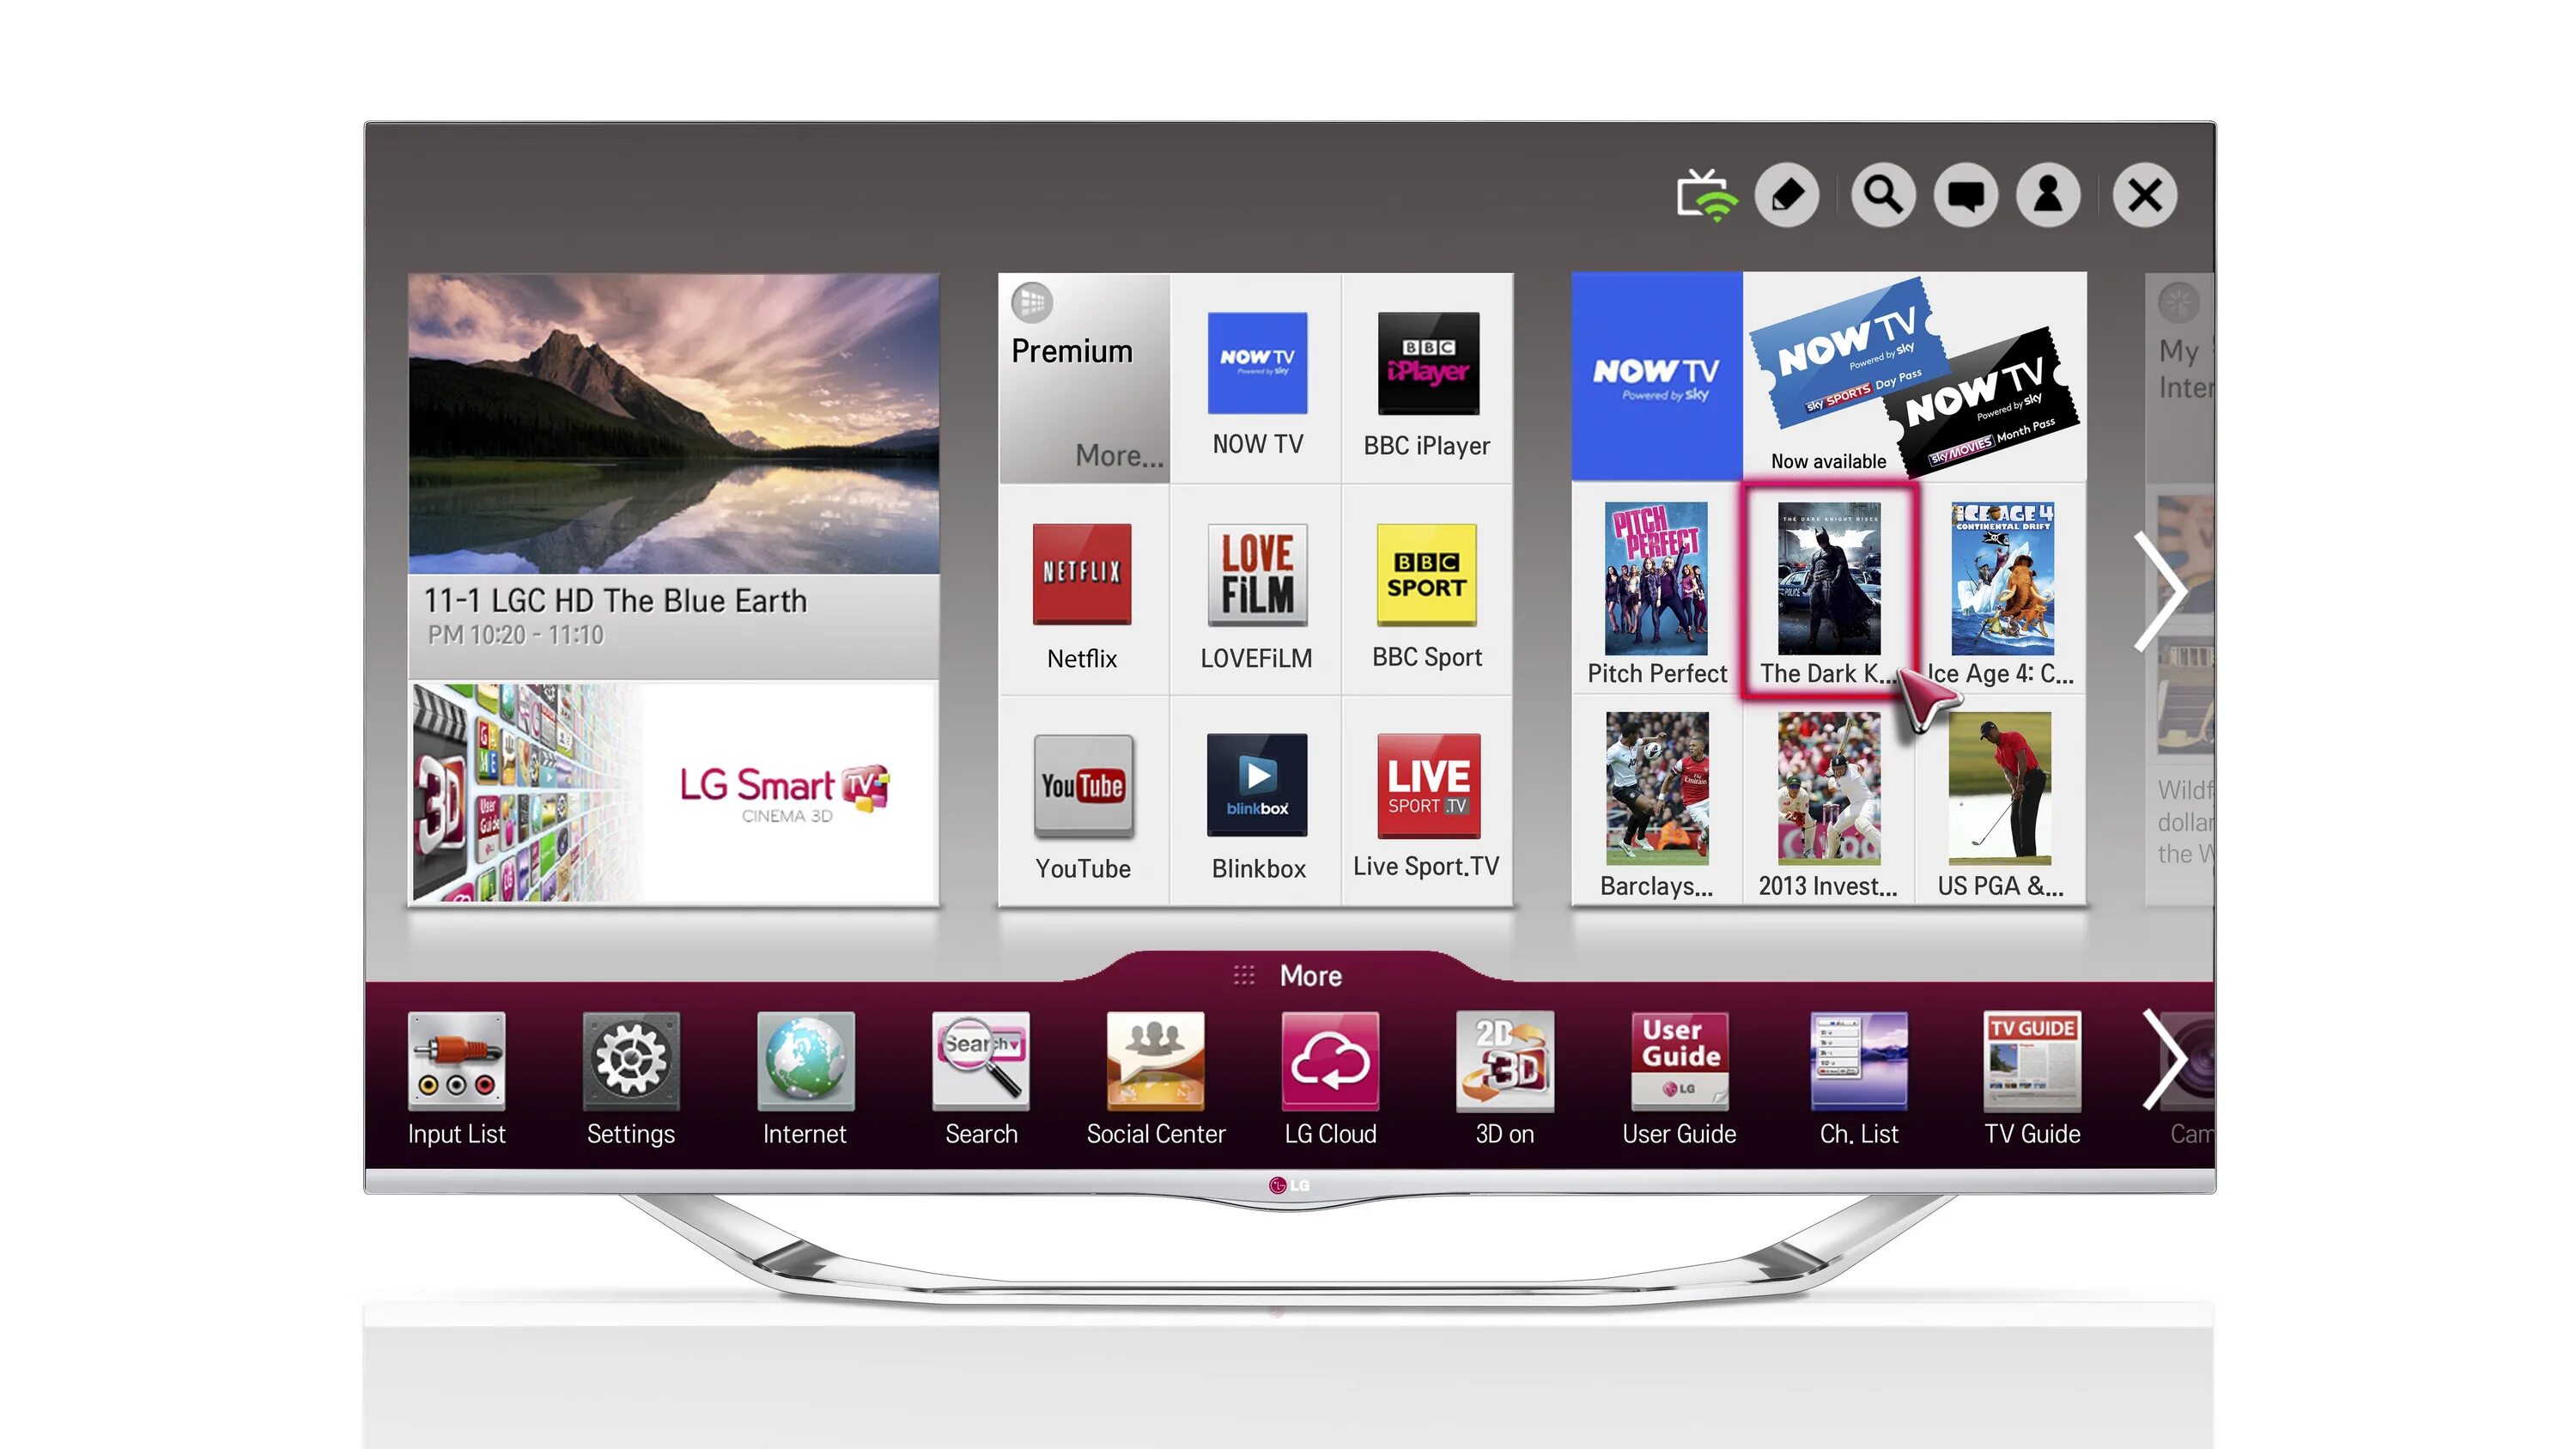 LG Smart TV 2013. Телевизор LG Smart TV 2013 года. Телевизор LG со смарт ТВ 2013 года. ТВ LG смарт ТВ 3 D 2013 года.